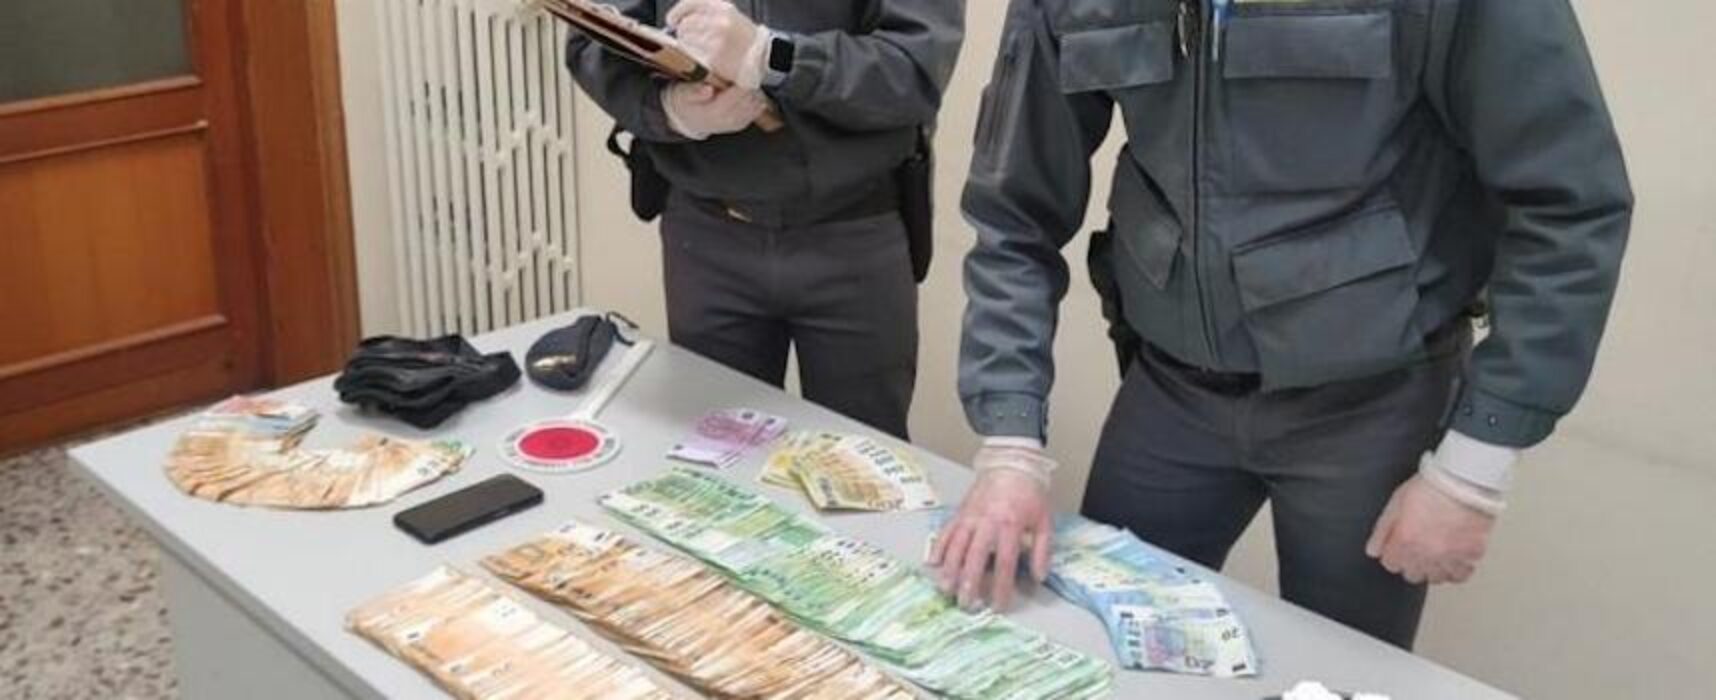 Spaccio droga, arrestato un uomo e sequestrati 57mila euro in contanti nella sua casa biscegliese